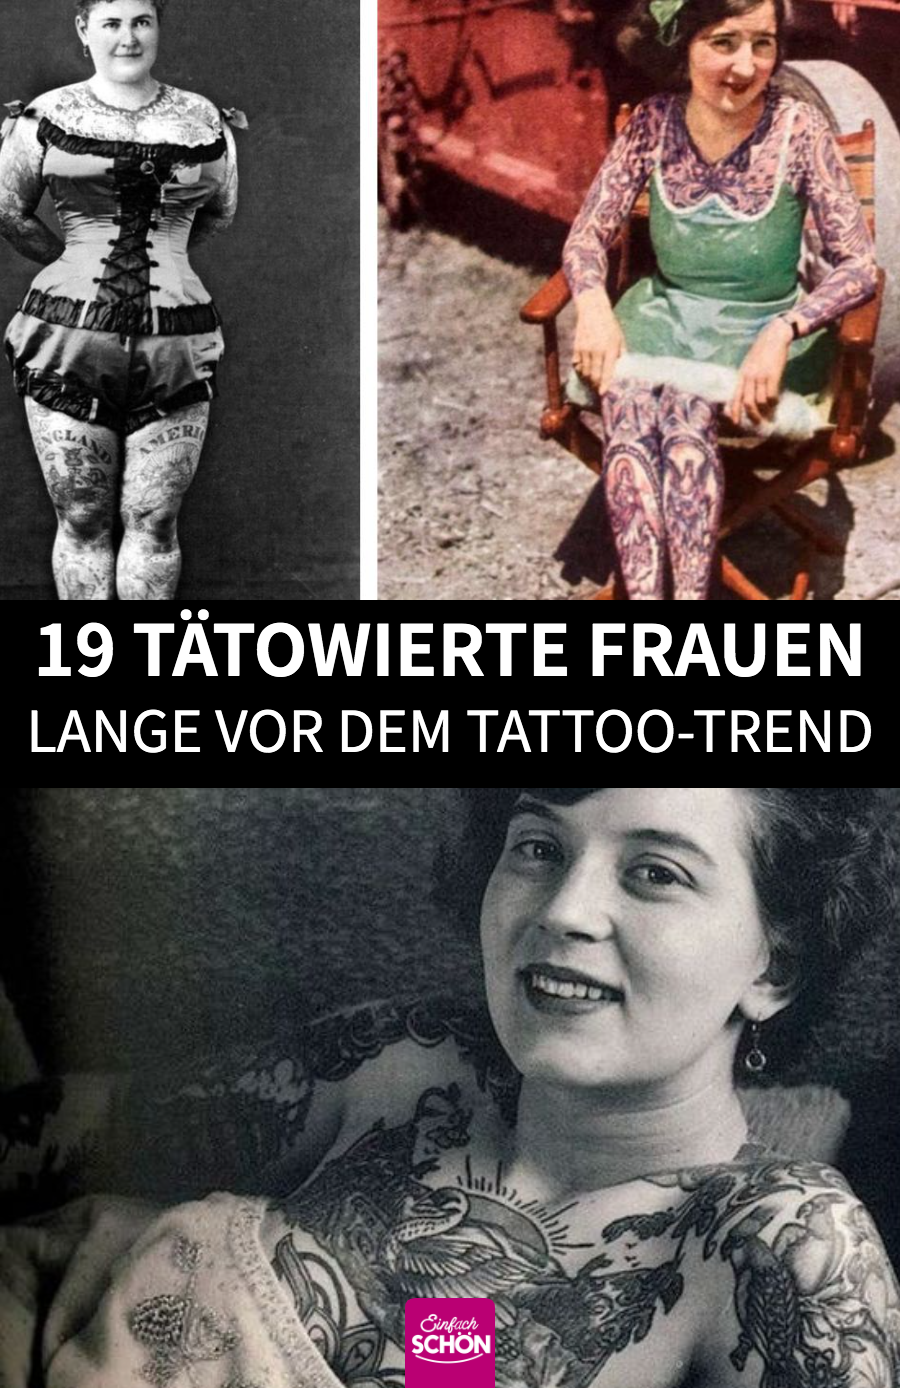 Tattooed Ladies: 19 alte Bilder von Frauen mit Tattoos